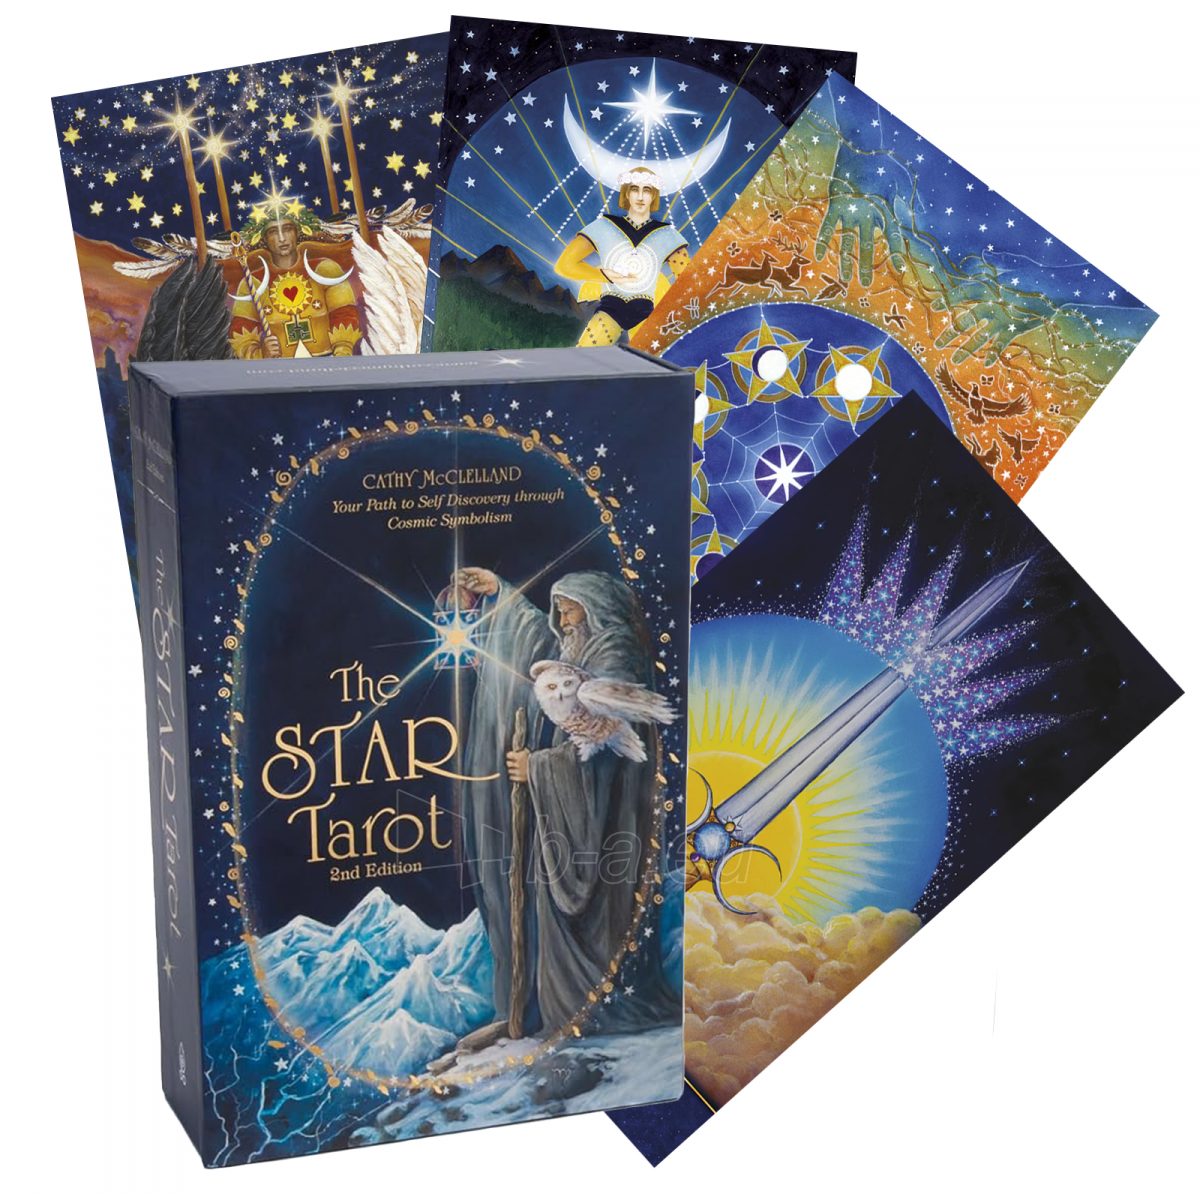 Taro kortos The Star Tarot 2nd Edition taro kortos paveikslėlis 2 iš 10